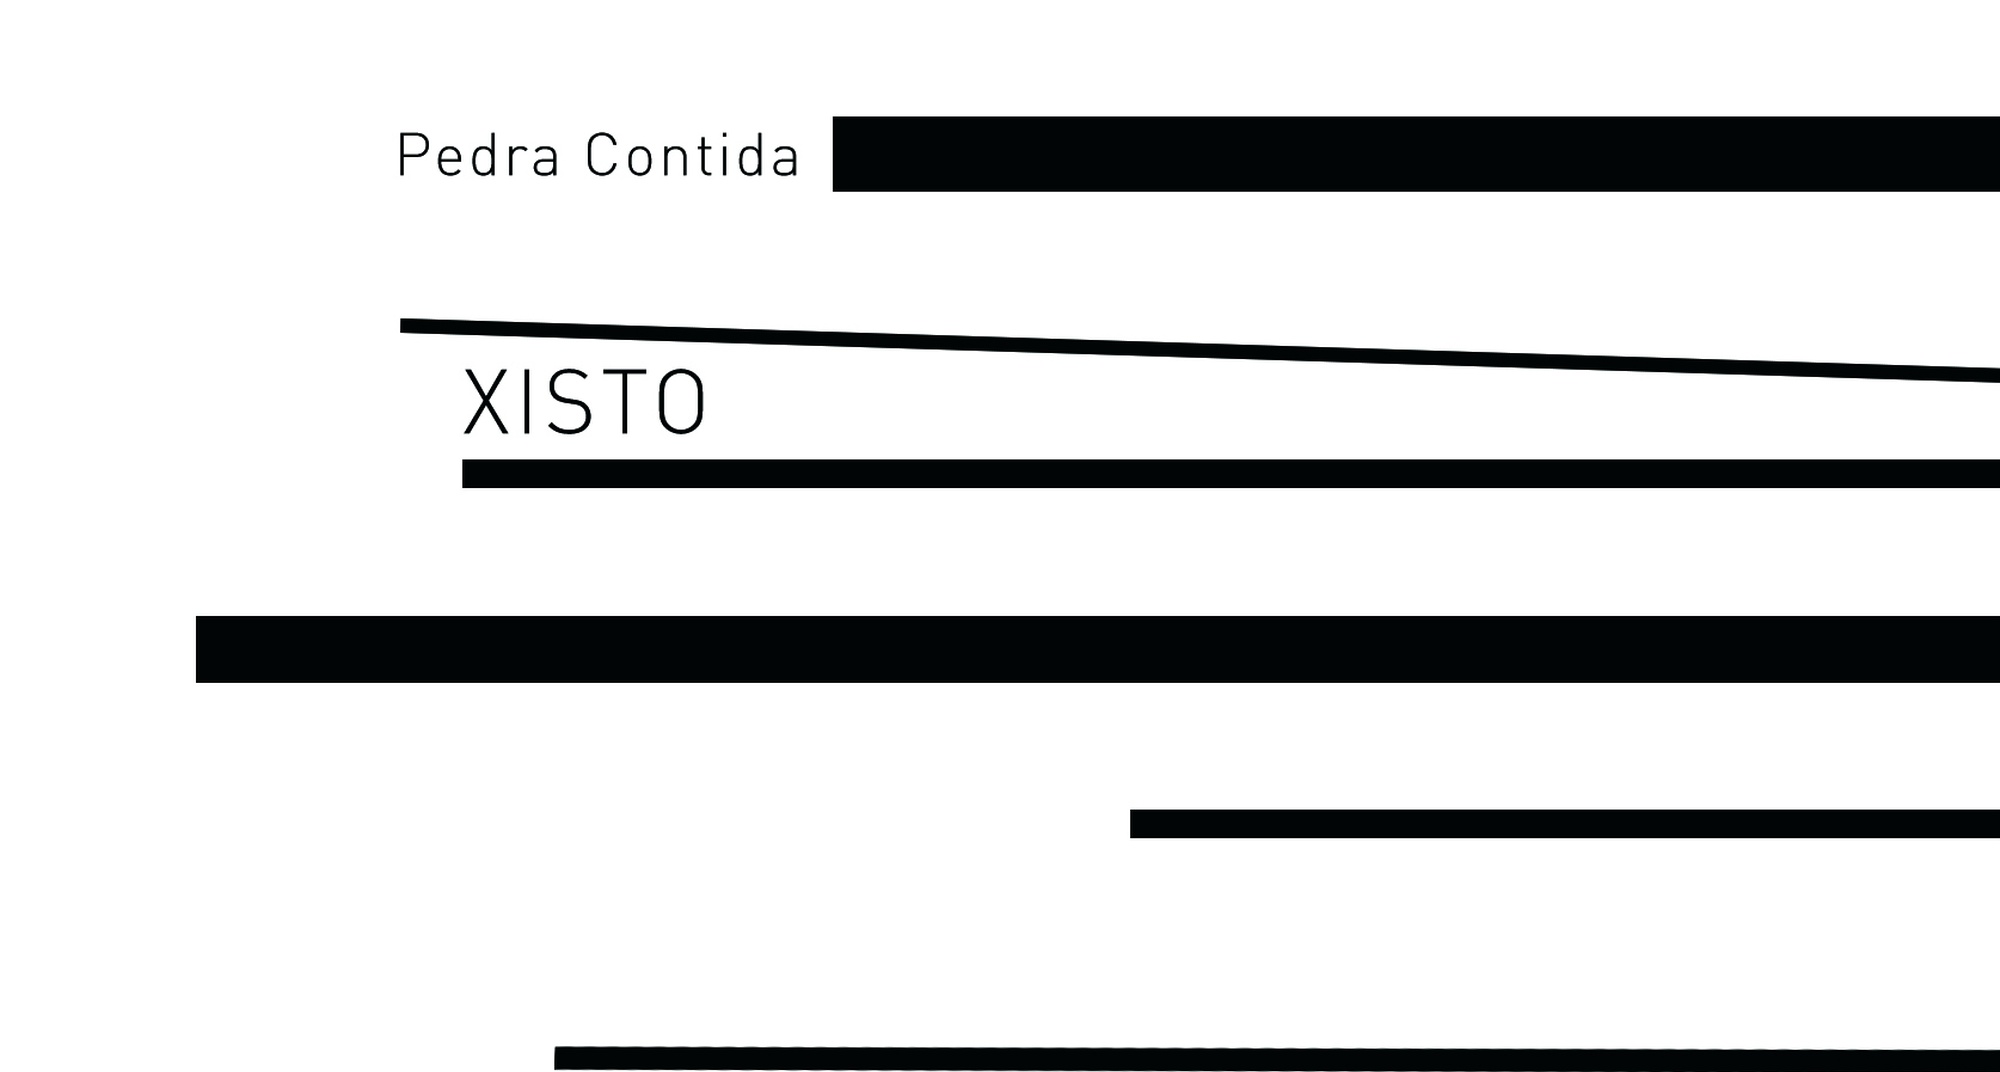 "XISTO” album release